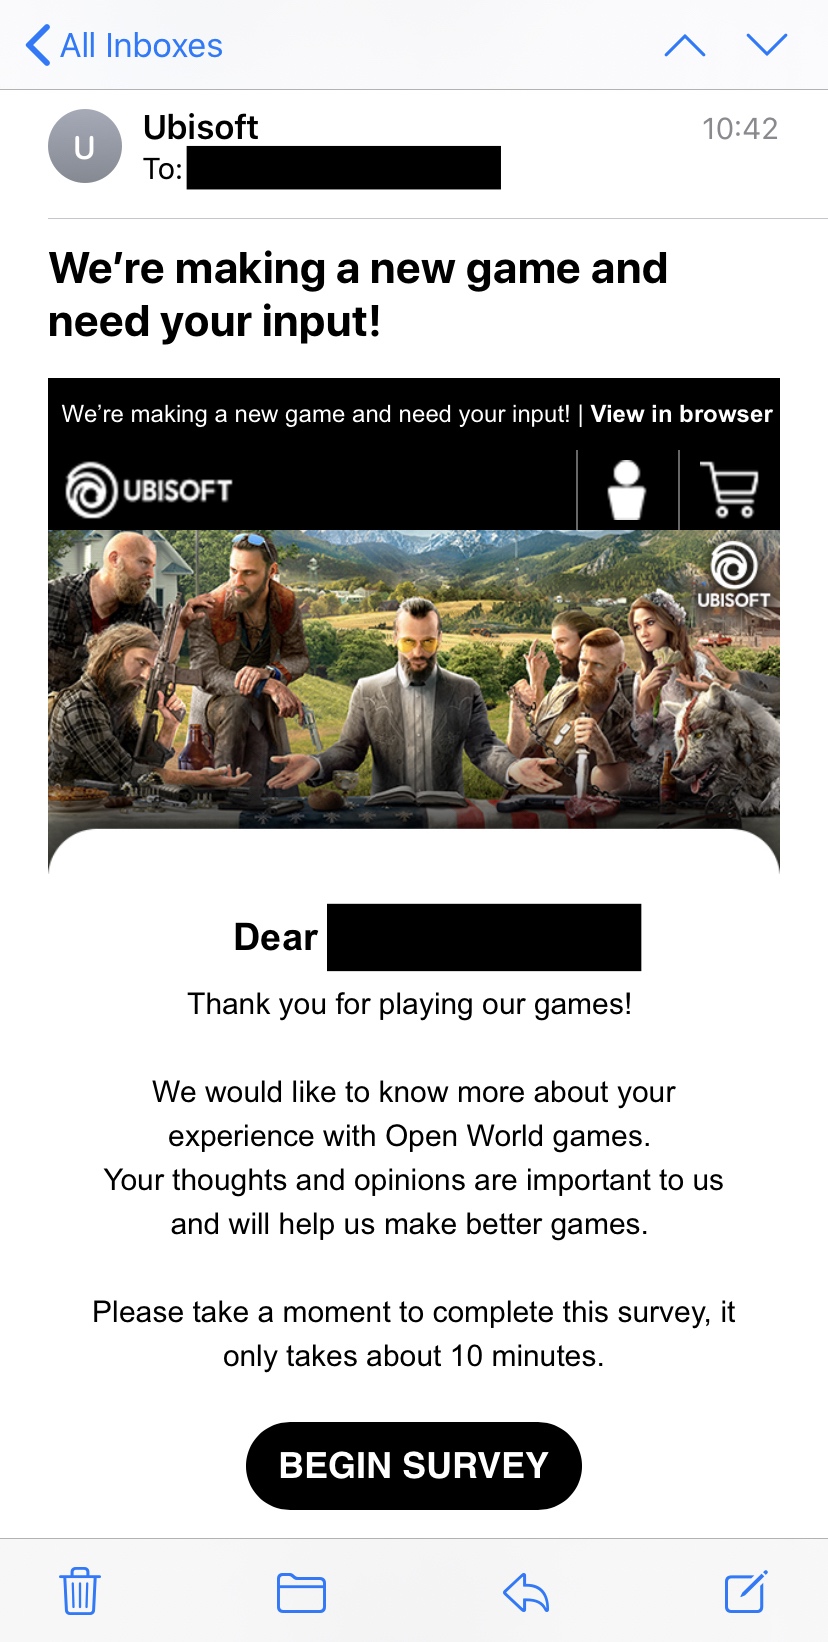 育碧又在打造新开放世界游戏 还发邮件收集玩家意见